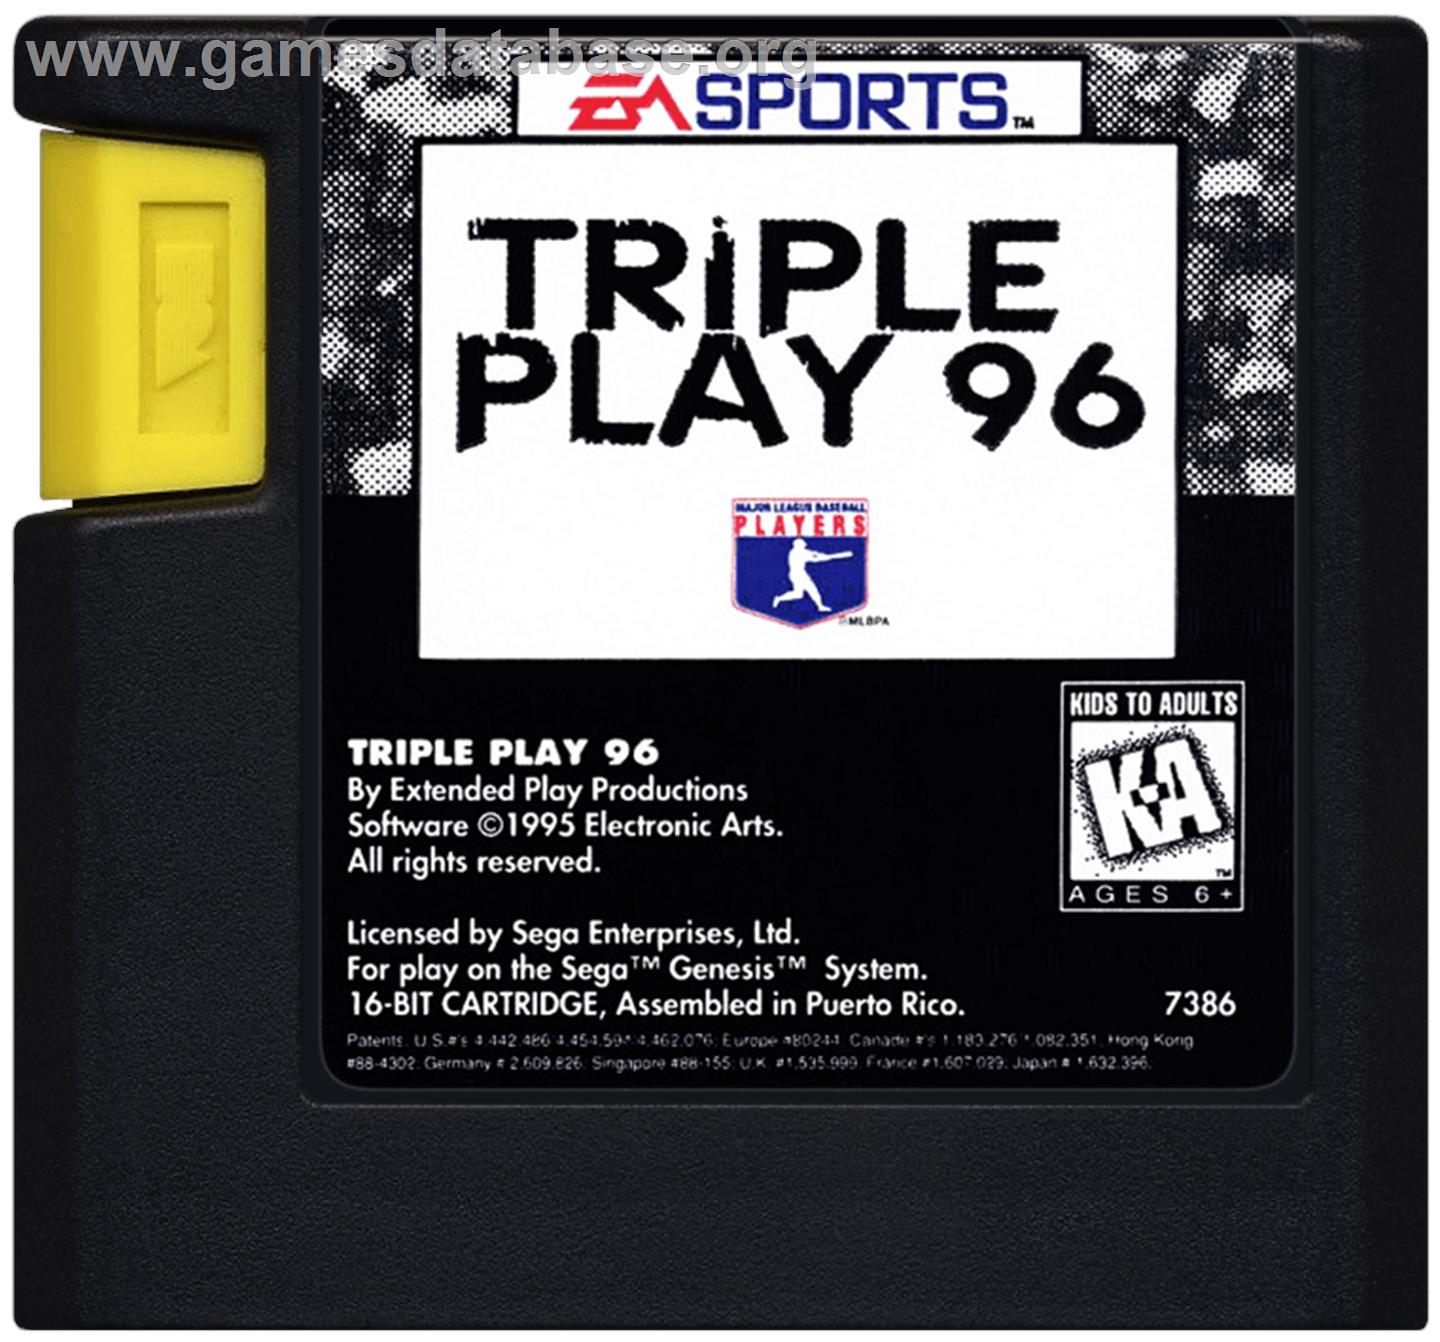 Triple Play '96 - Sega Genesis - Artwork - Cartridge